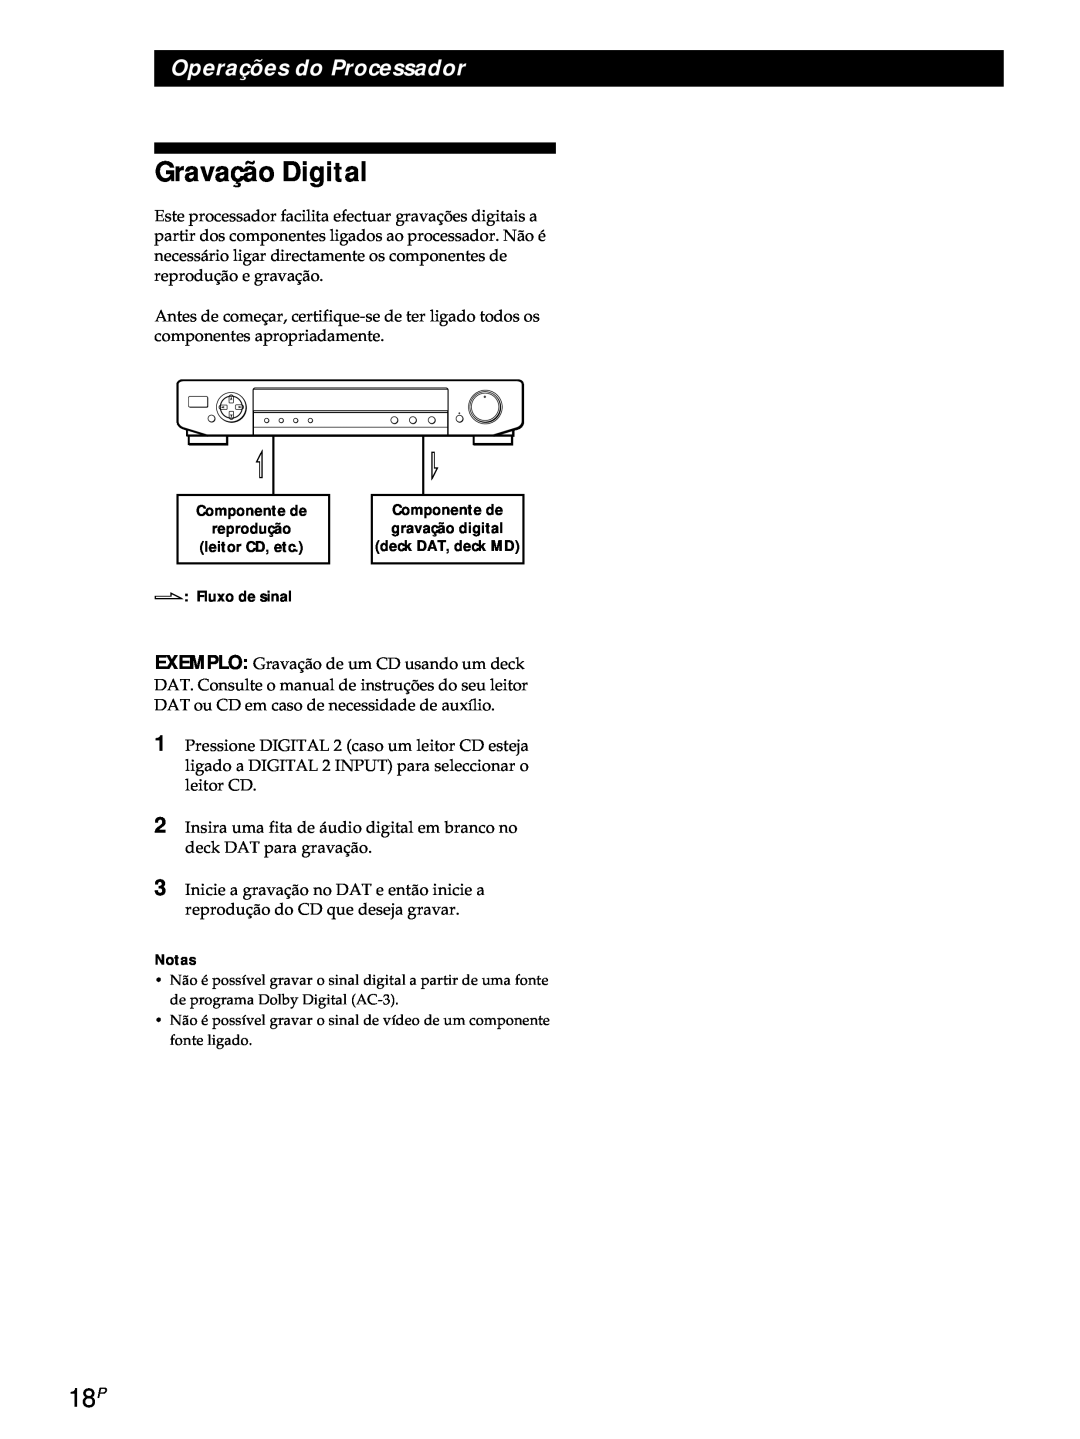 Sony SDP-E800 operating instructions Gravação Digital, Operações do Processador 